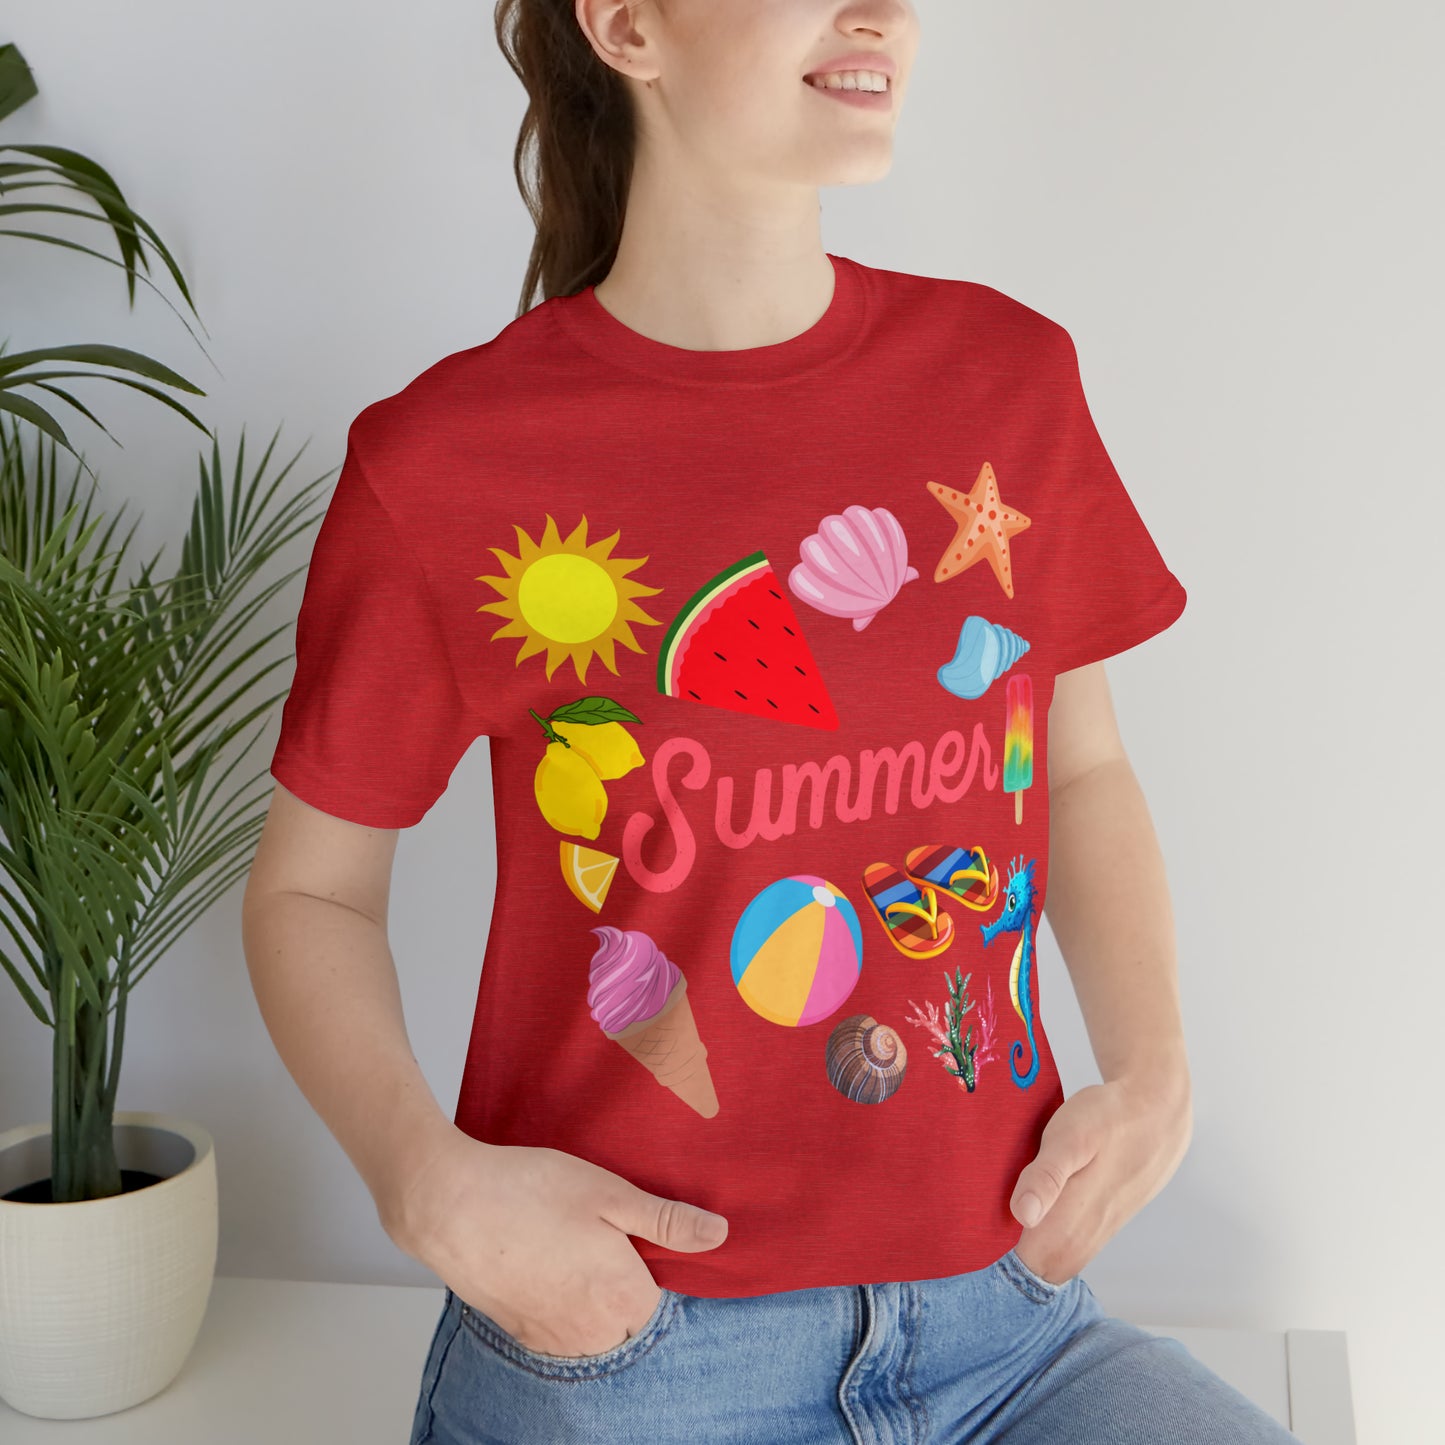 Fun Summer Shirt, Summer tshirt, Summer shirts for women and men